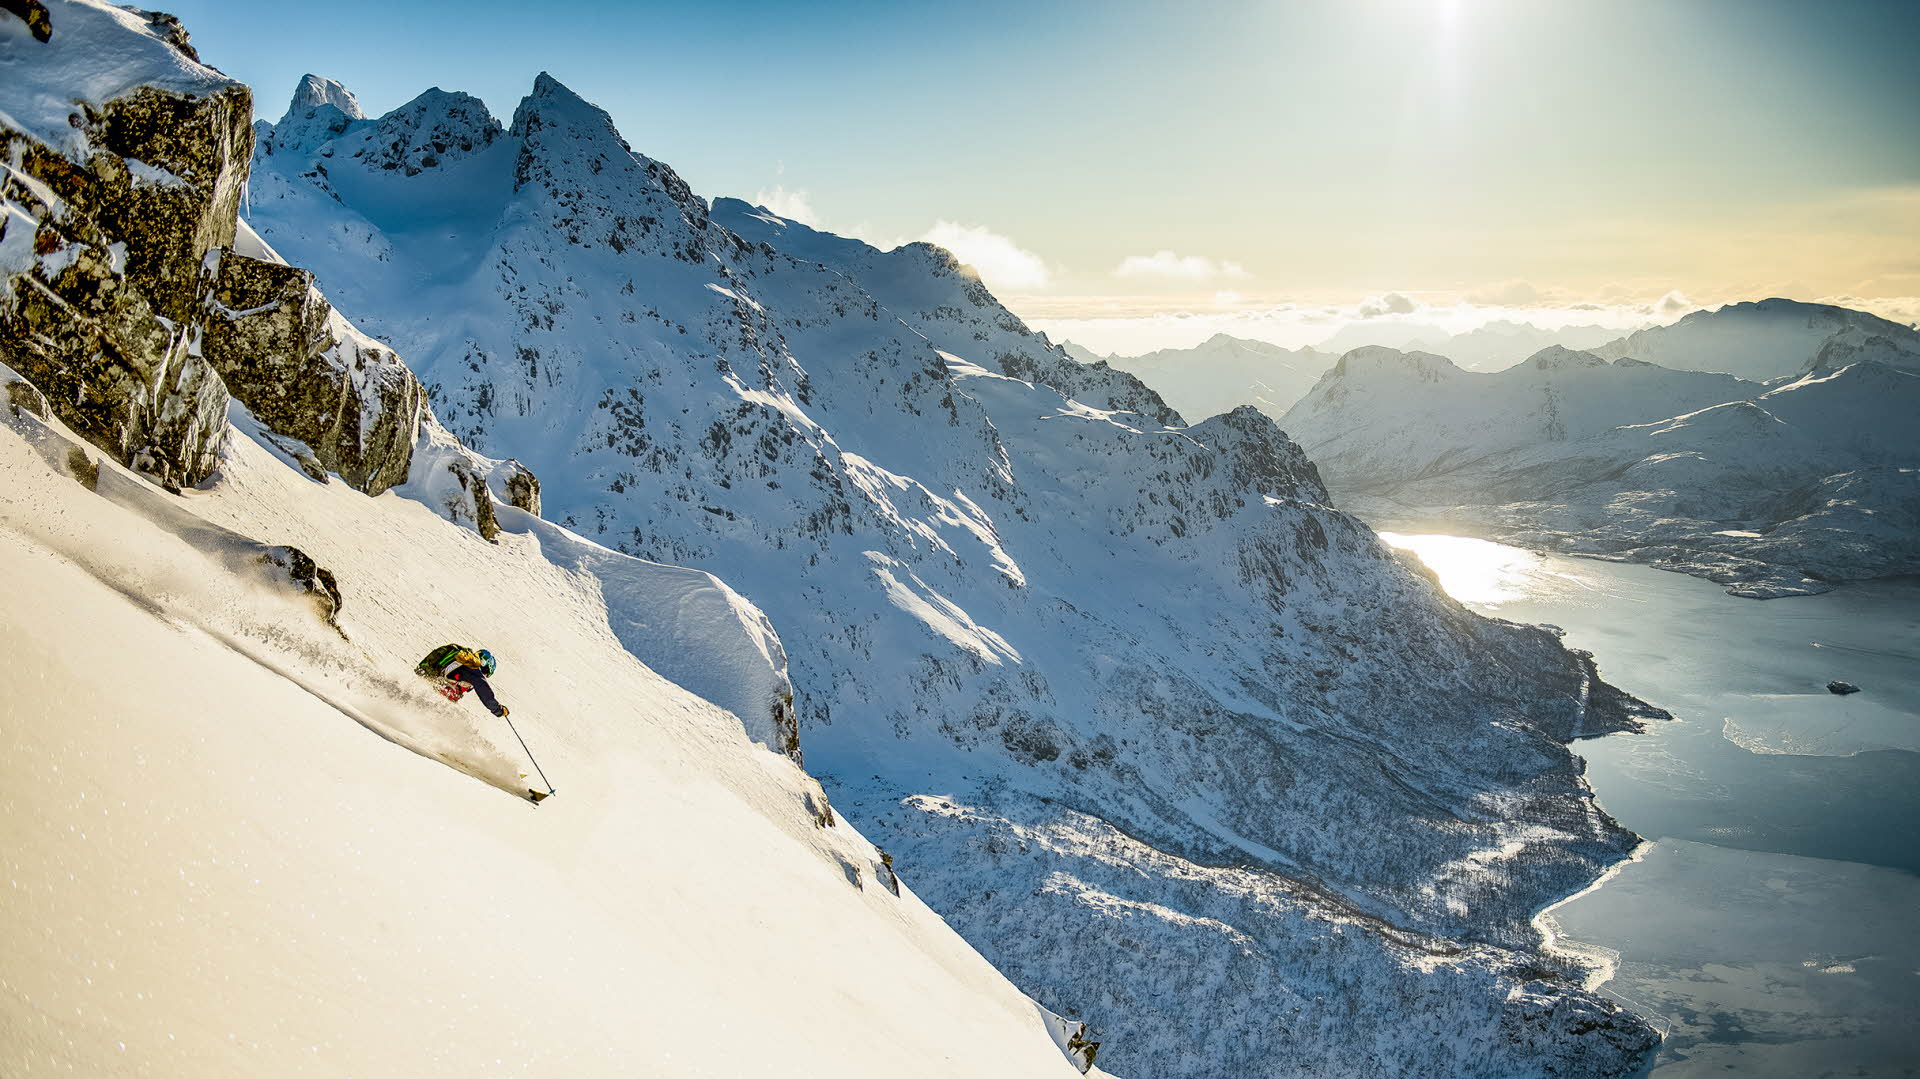 Une personne descendant une montagne à ski dans la neige fraîche, avec la mer en contrebas et une chaîne de montagnes à l’arrière-plan.